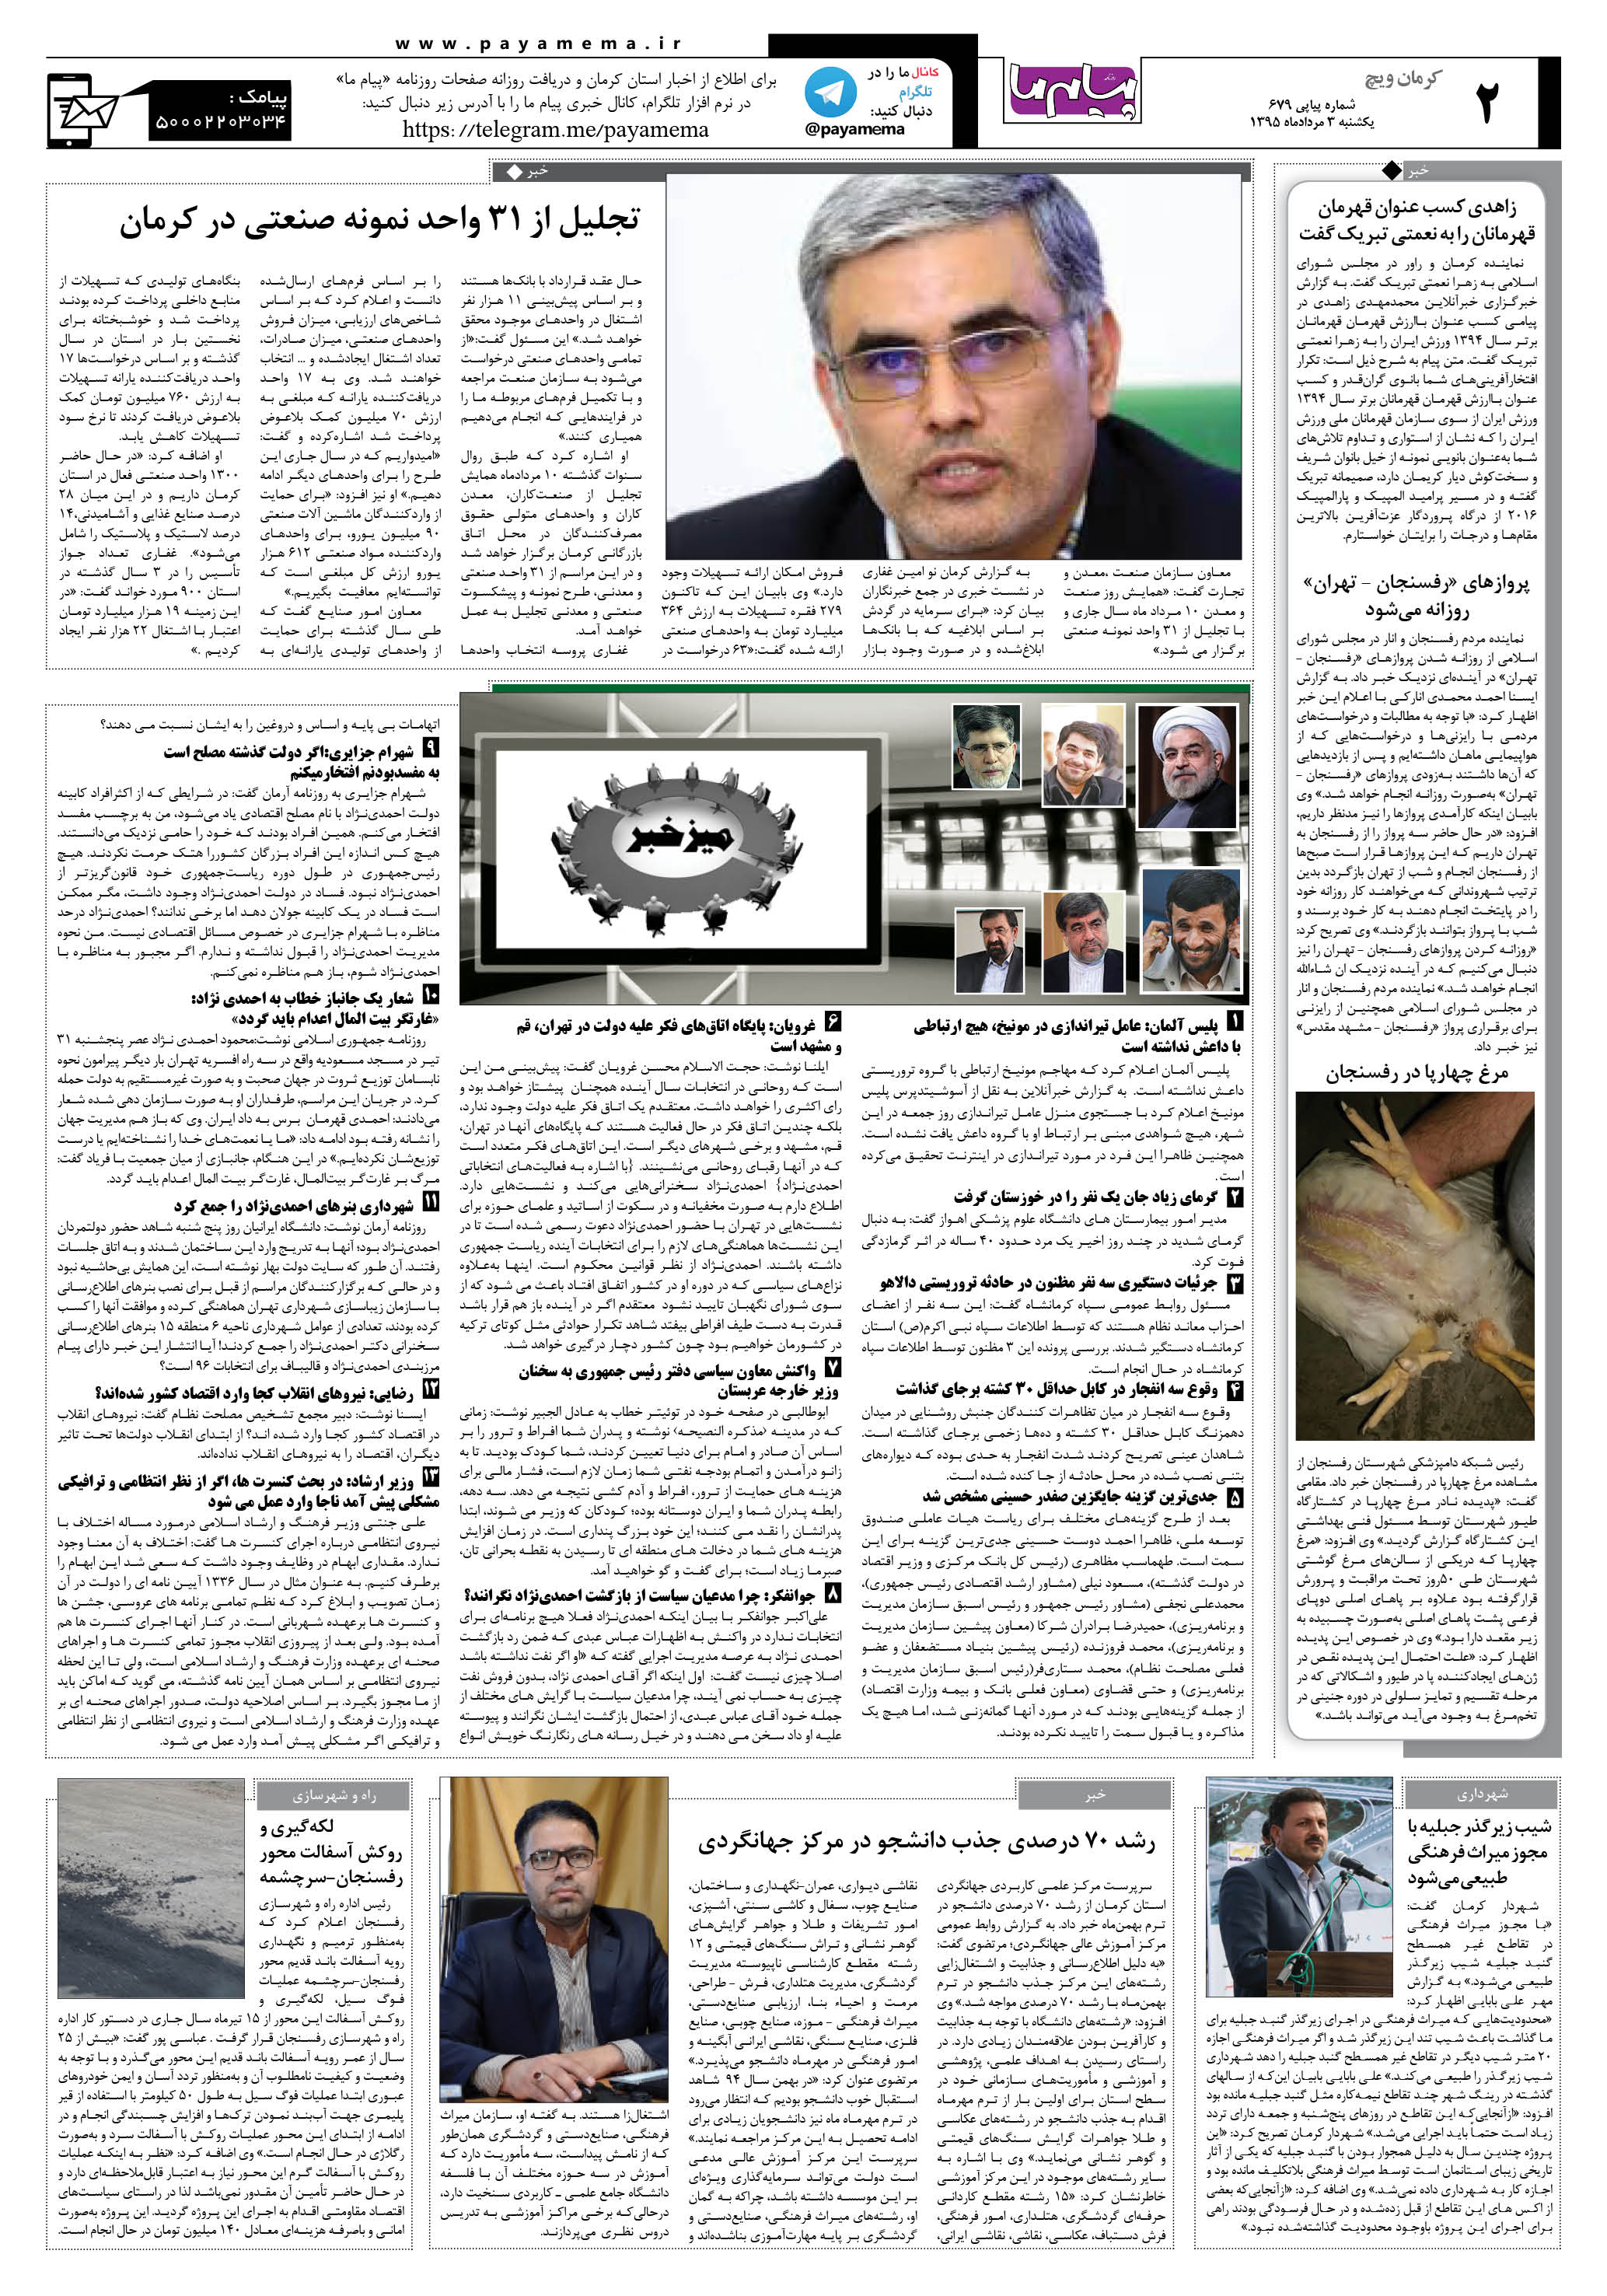 صفحه کرمان ویج شماره 679 روزنامه پیام ما